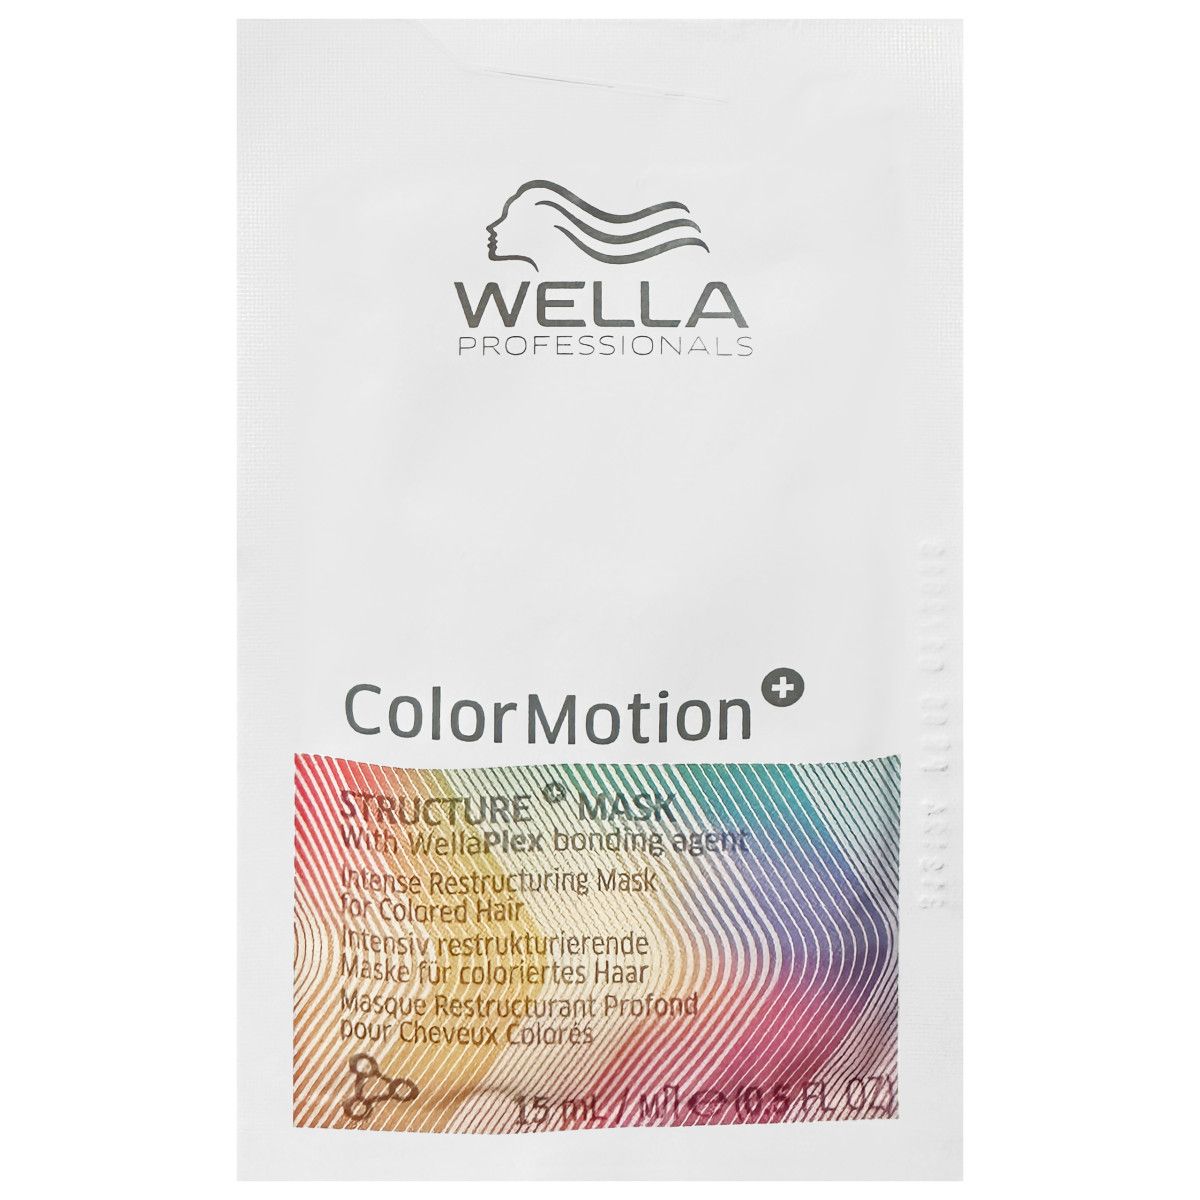 Wella Color Motion Mask - maska przedłużająca trwałość koloru włosów farbowanych, 15ml